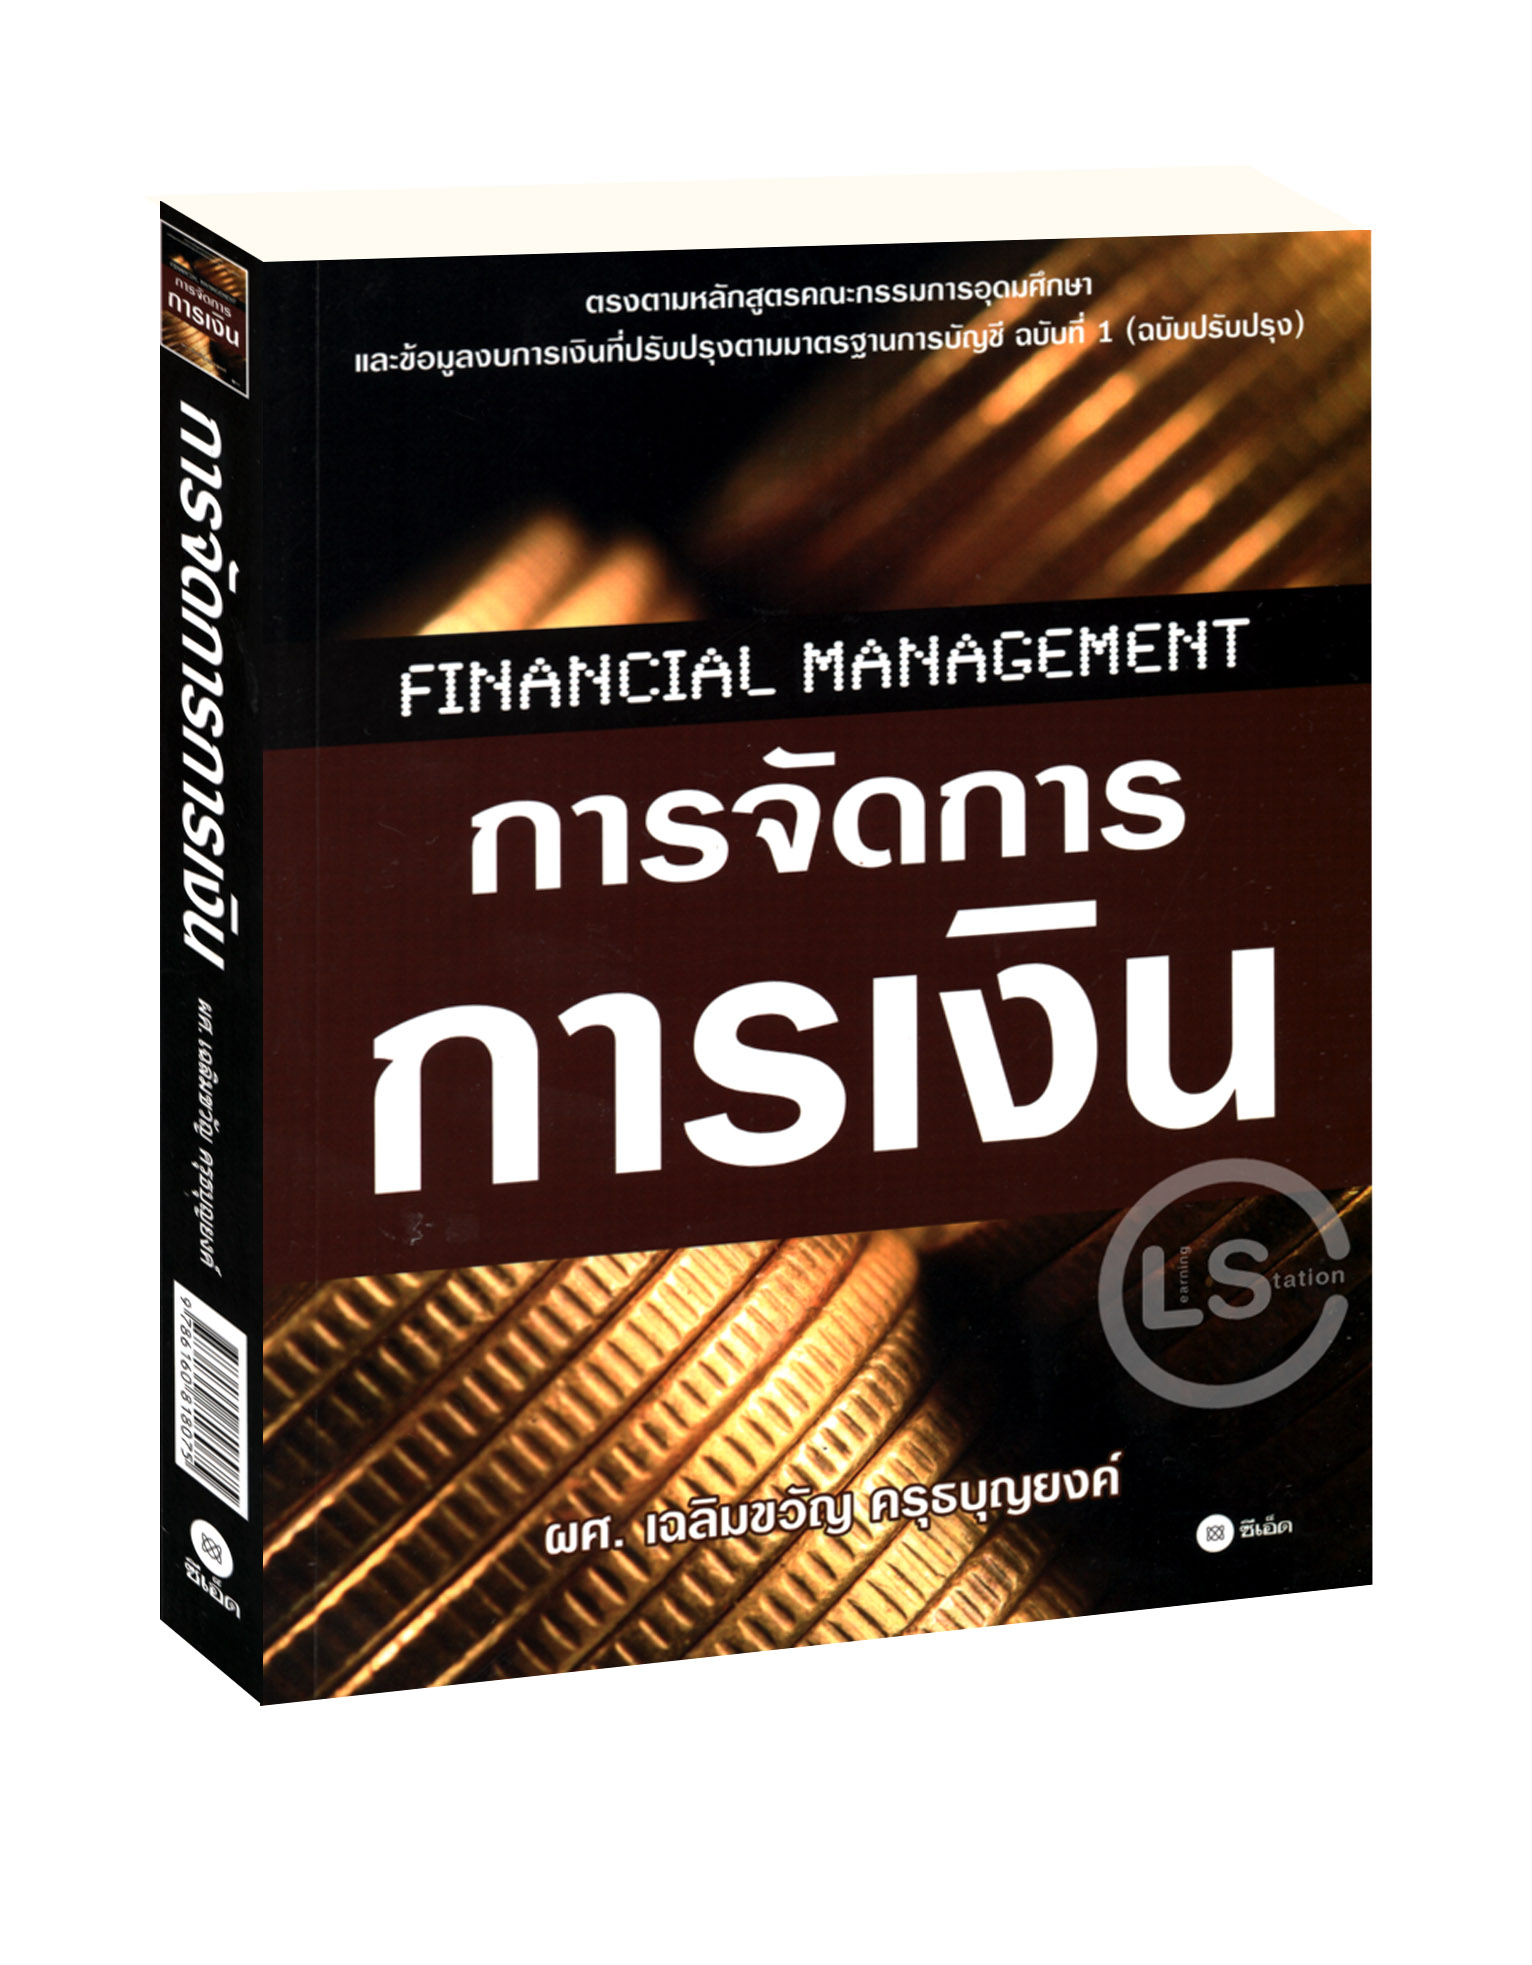 การจัดการการเงิน : Financial Management